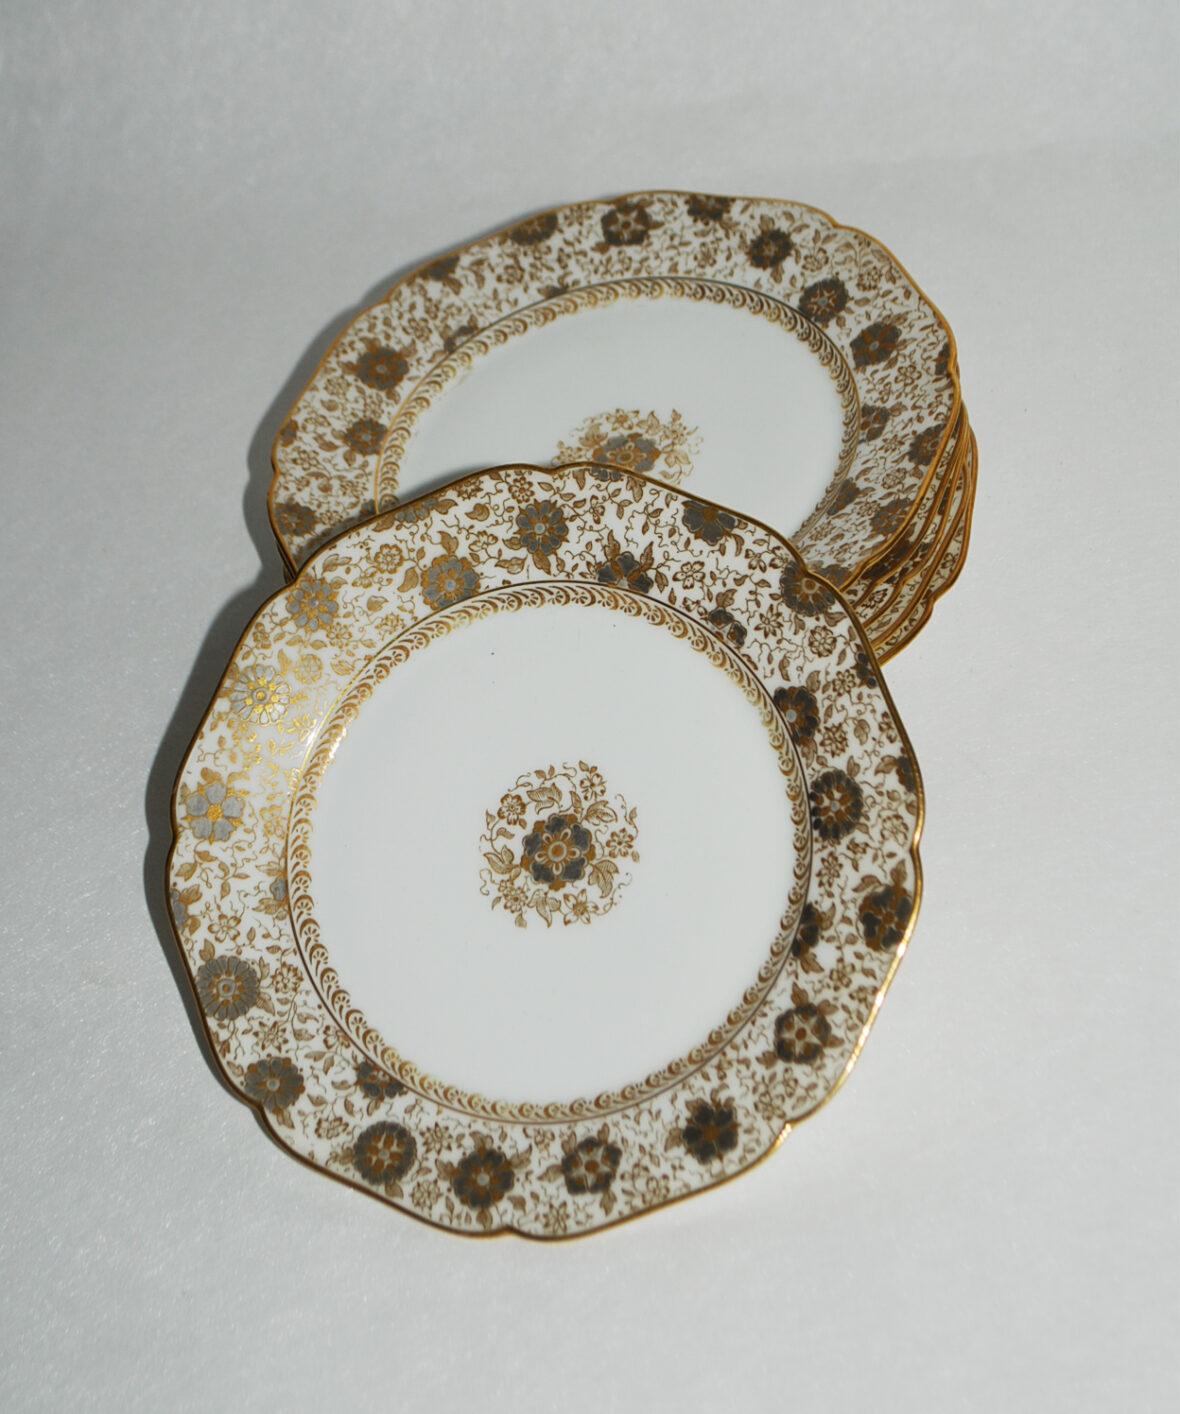 HAVILAND Six petites assiettes à dessert de forme chantournée à décor sur l'aile de fleurettes dorées. Fin du XIXe siècle.